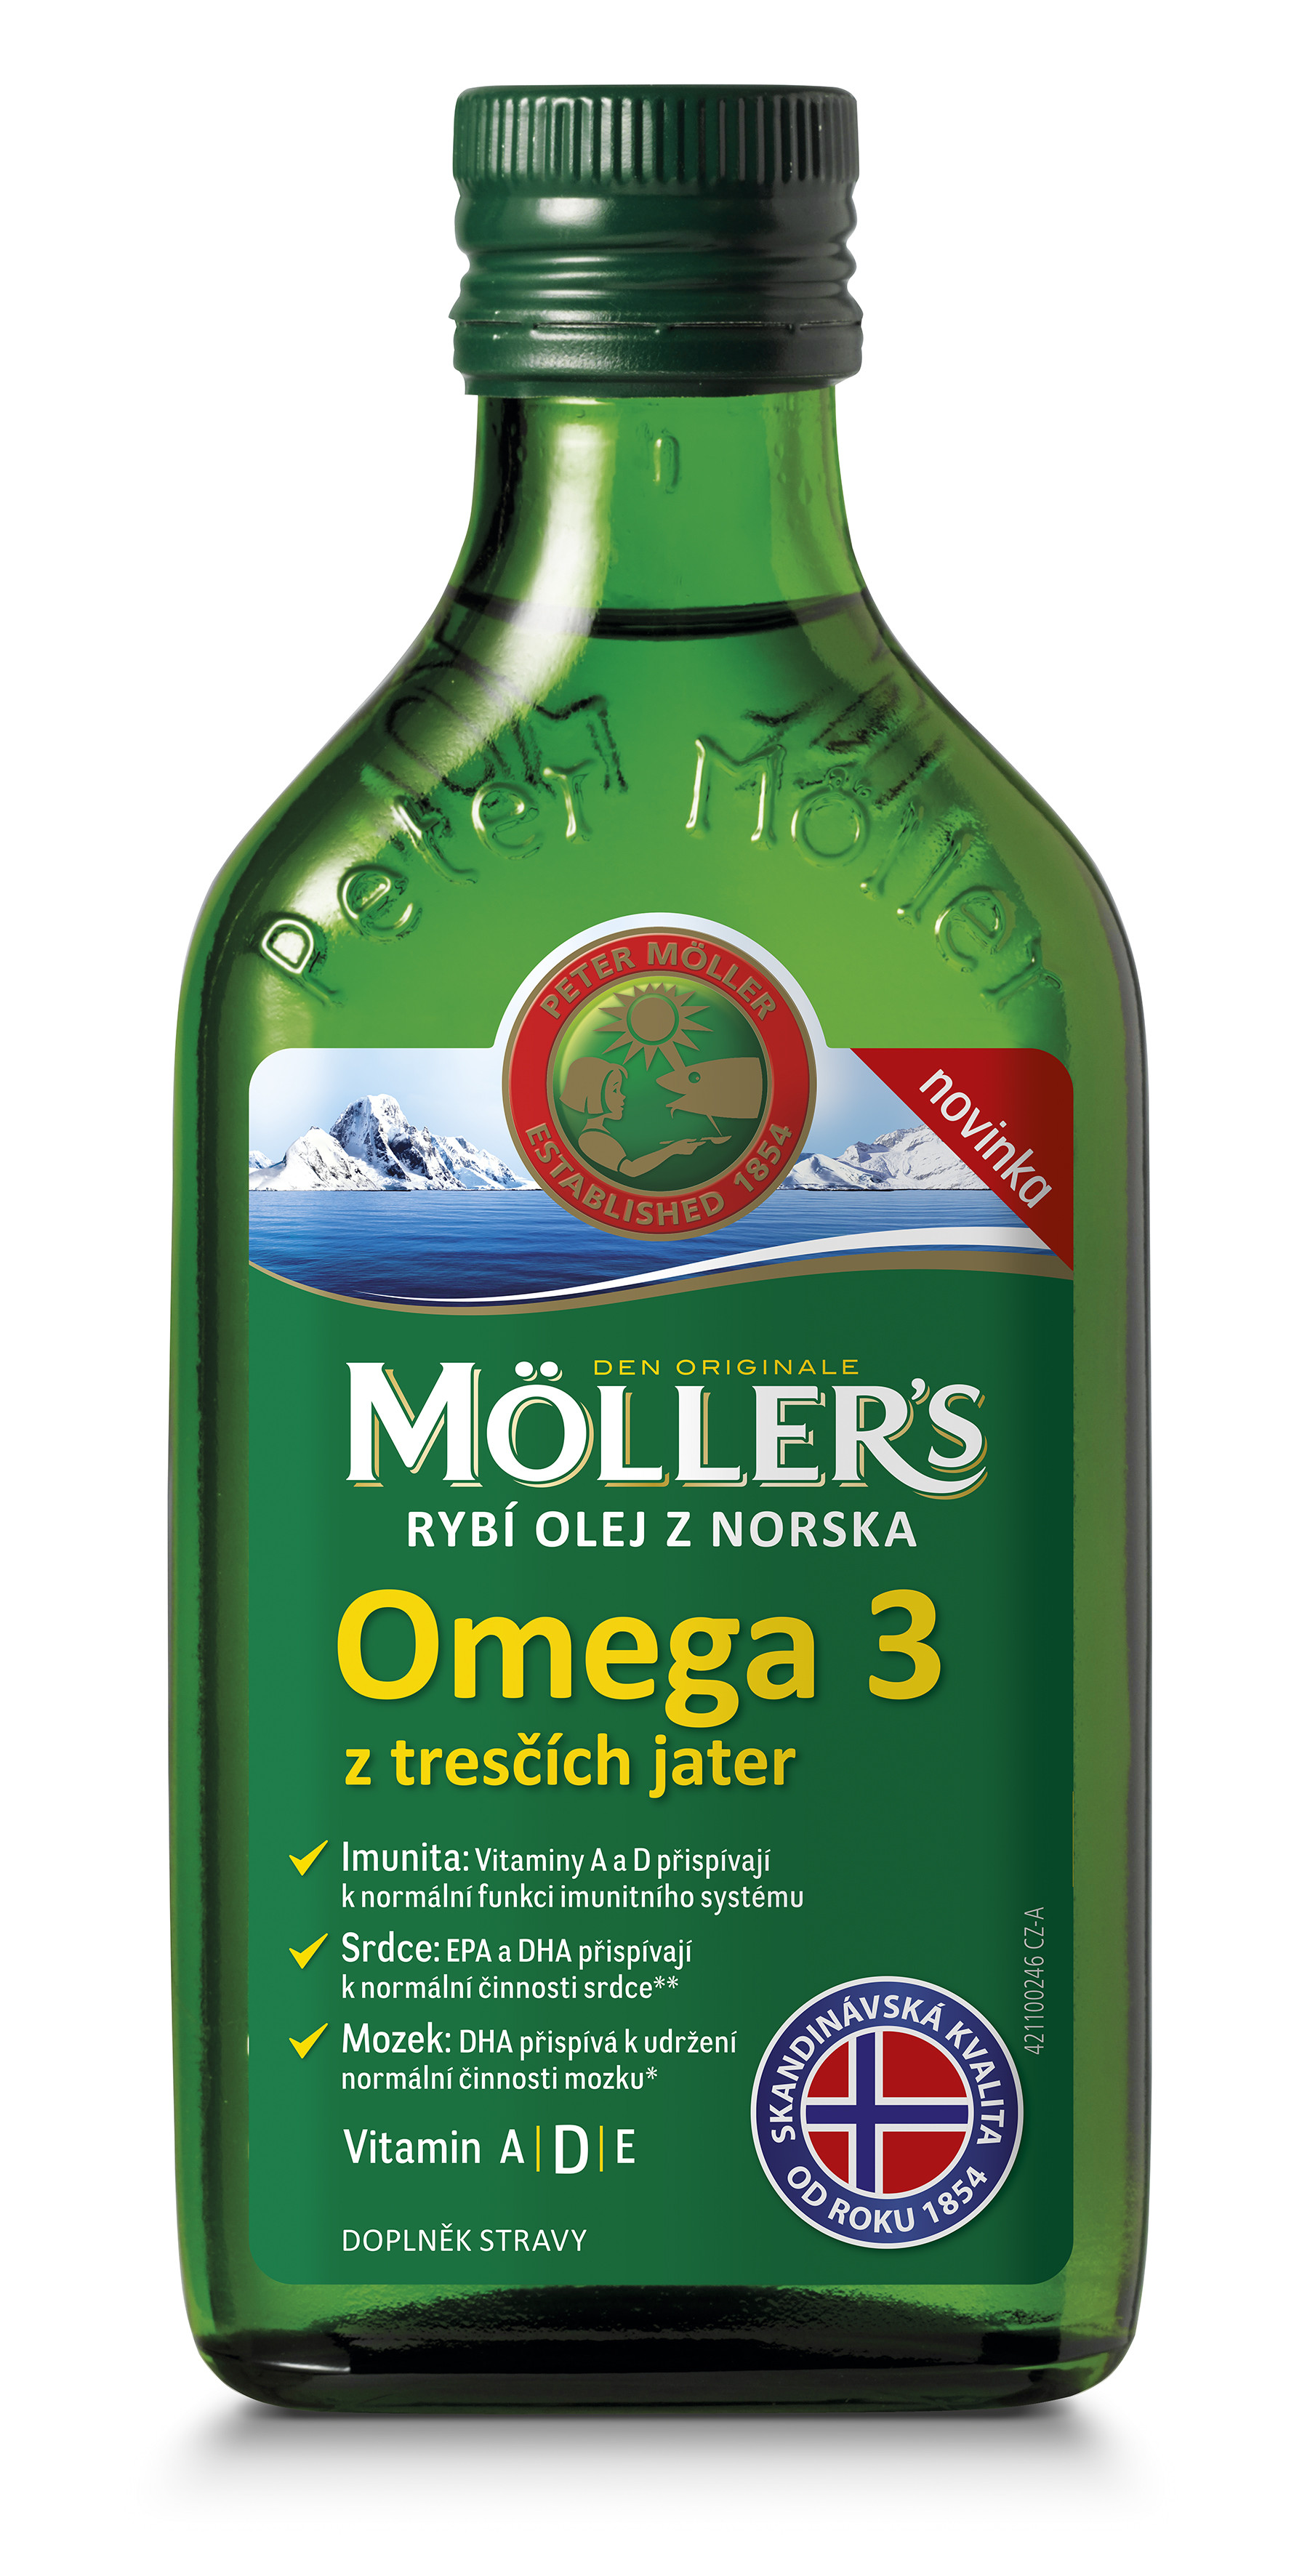 Möller's rybí olej z Nórska z treščích pečení